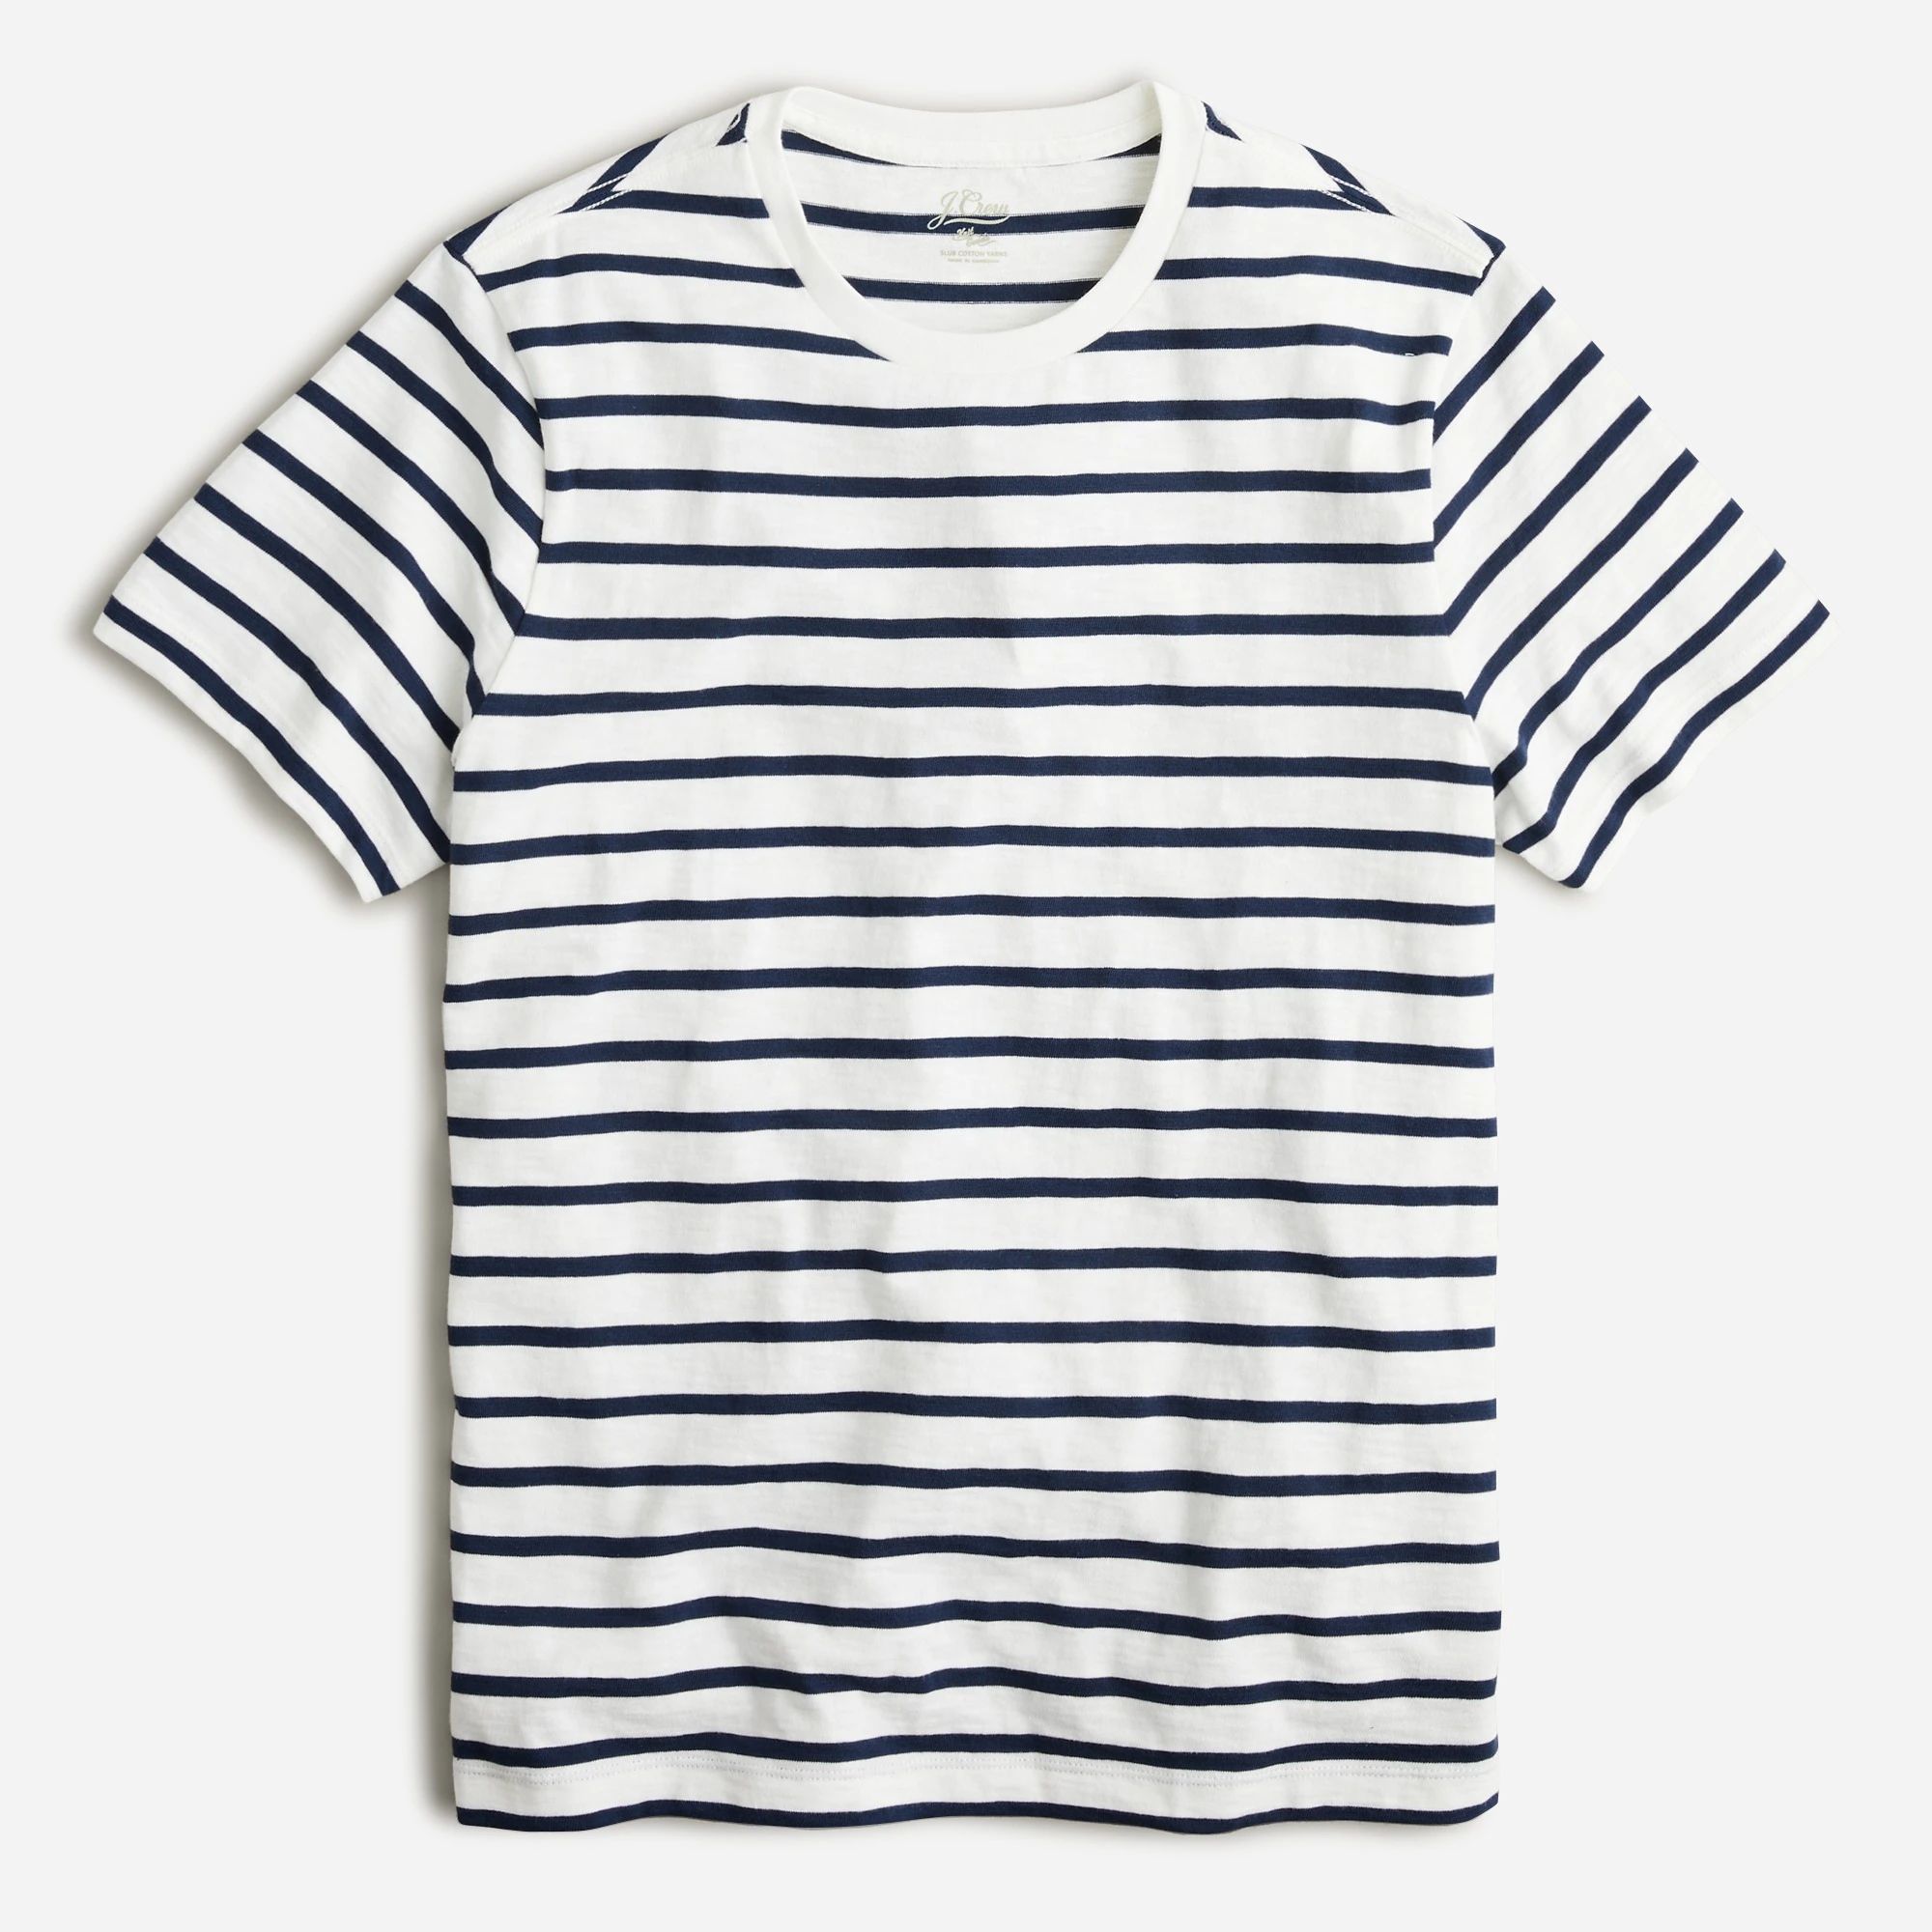 Slub jersey T-shirt in deck stripe | J.Crew US